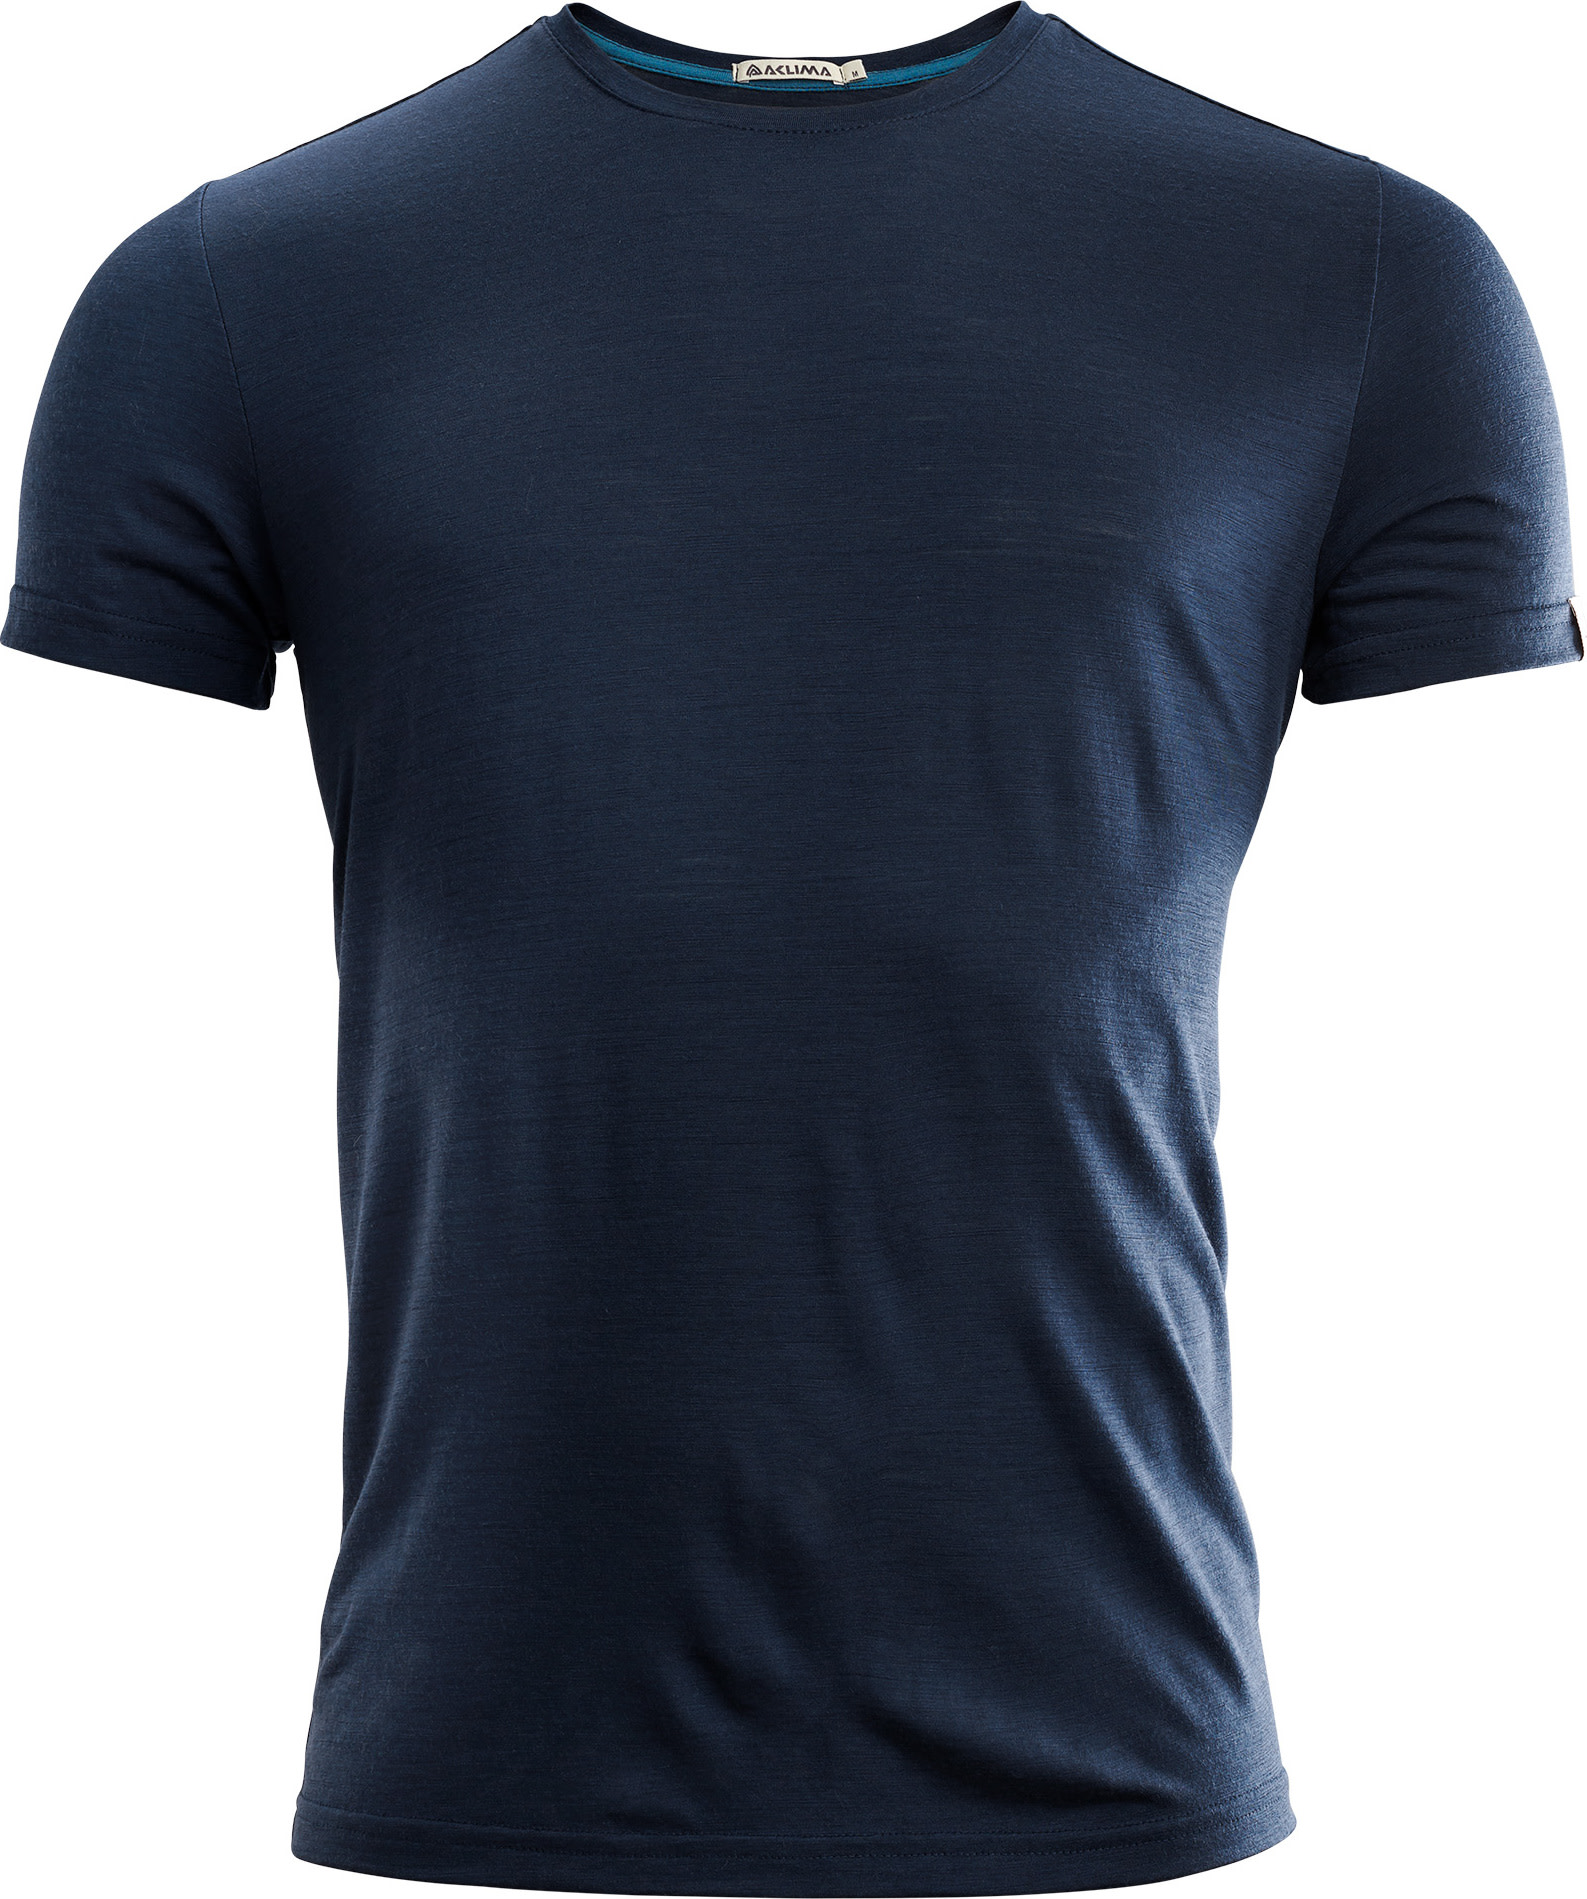 Aclima Men’s LightWool T-shirt Round Neck Navy Blazer